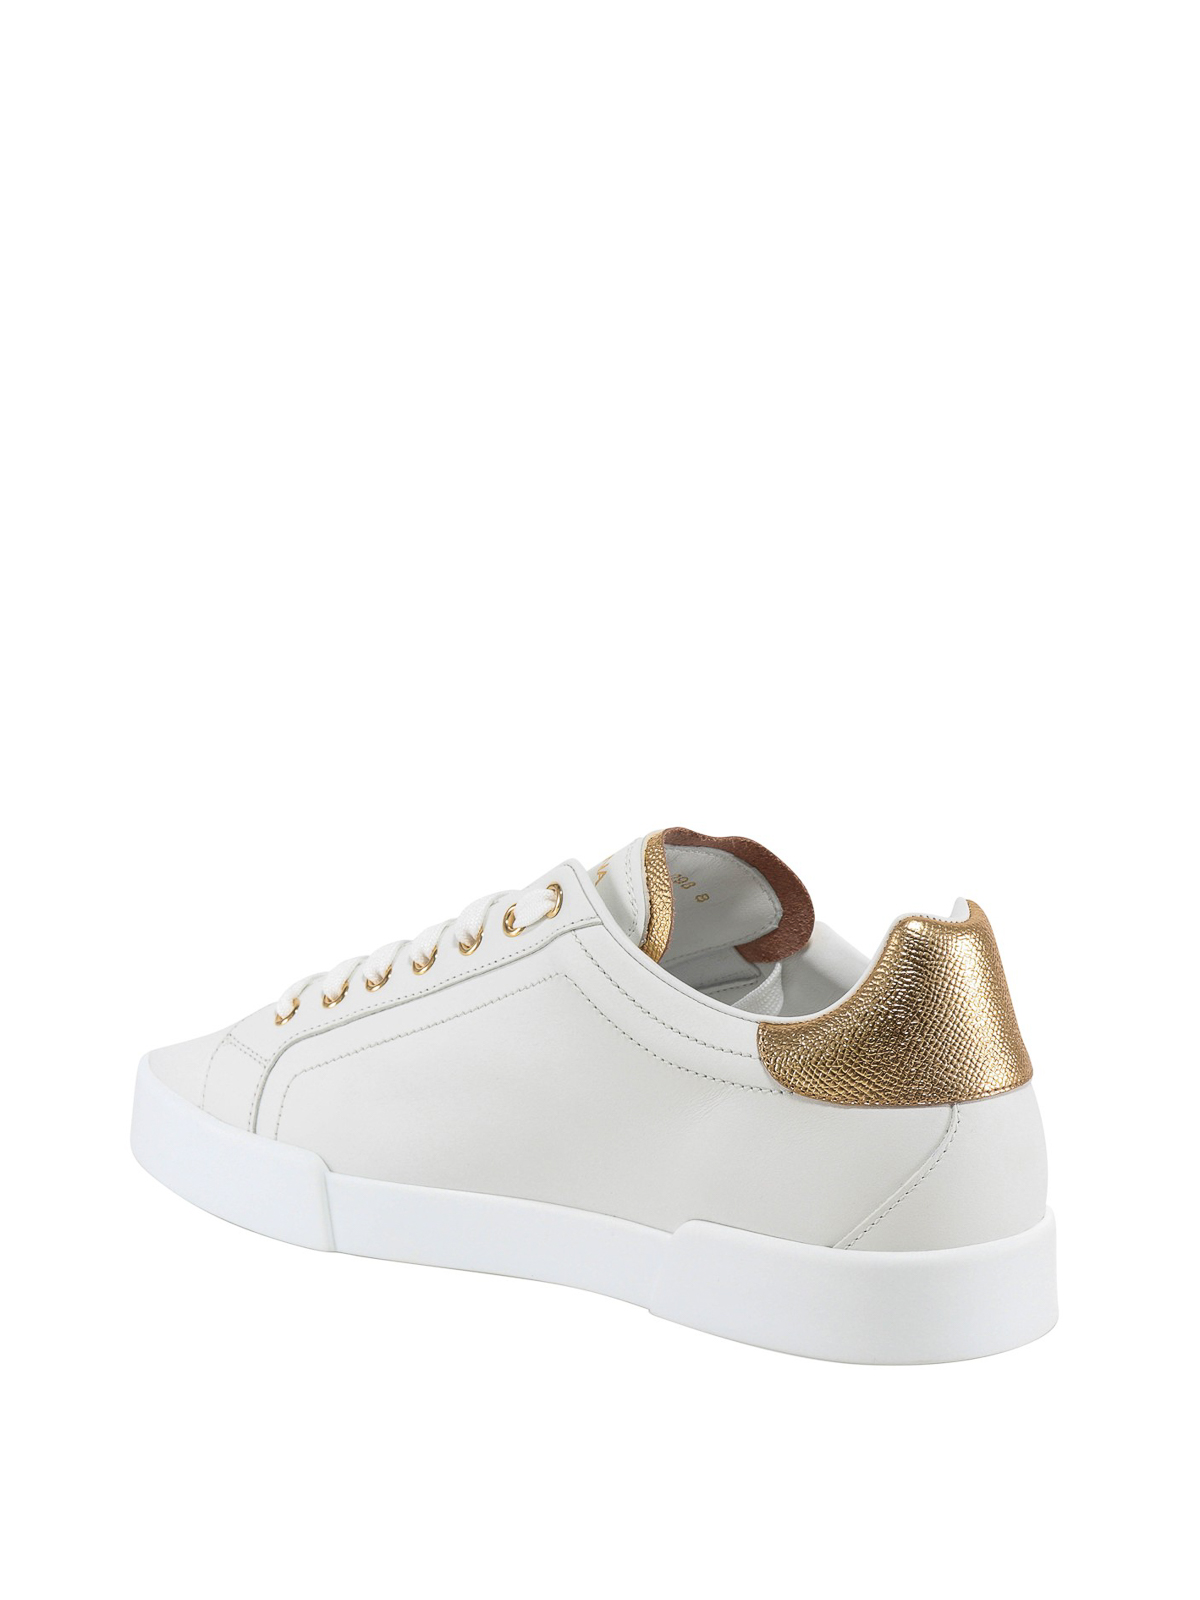 Trainers Dolce & Gabbana - Portofino white and gold sneakers ...